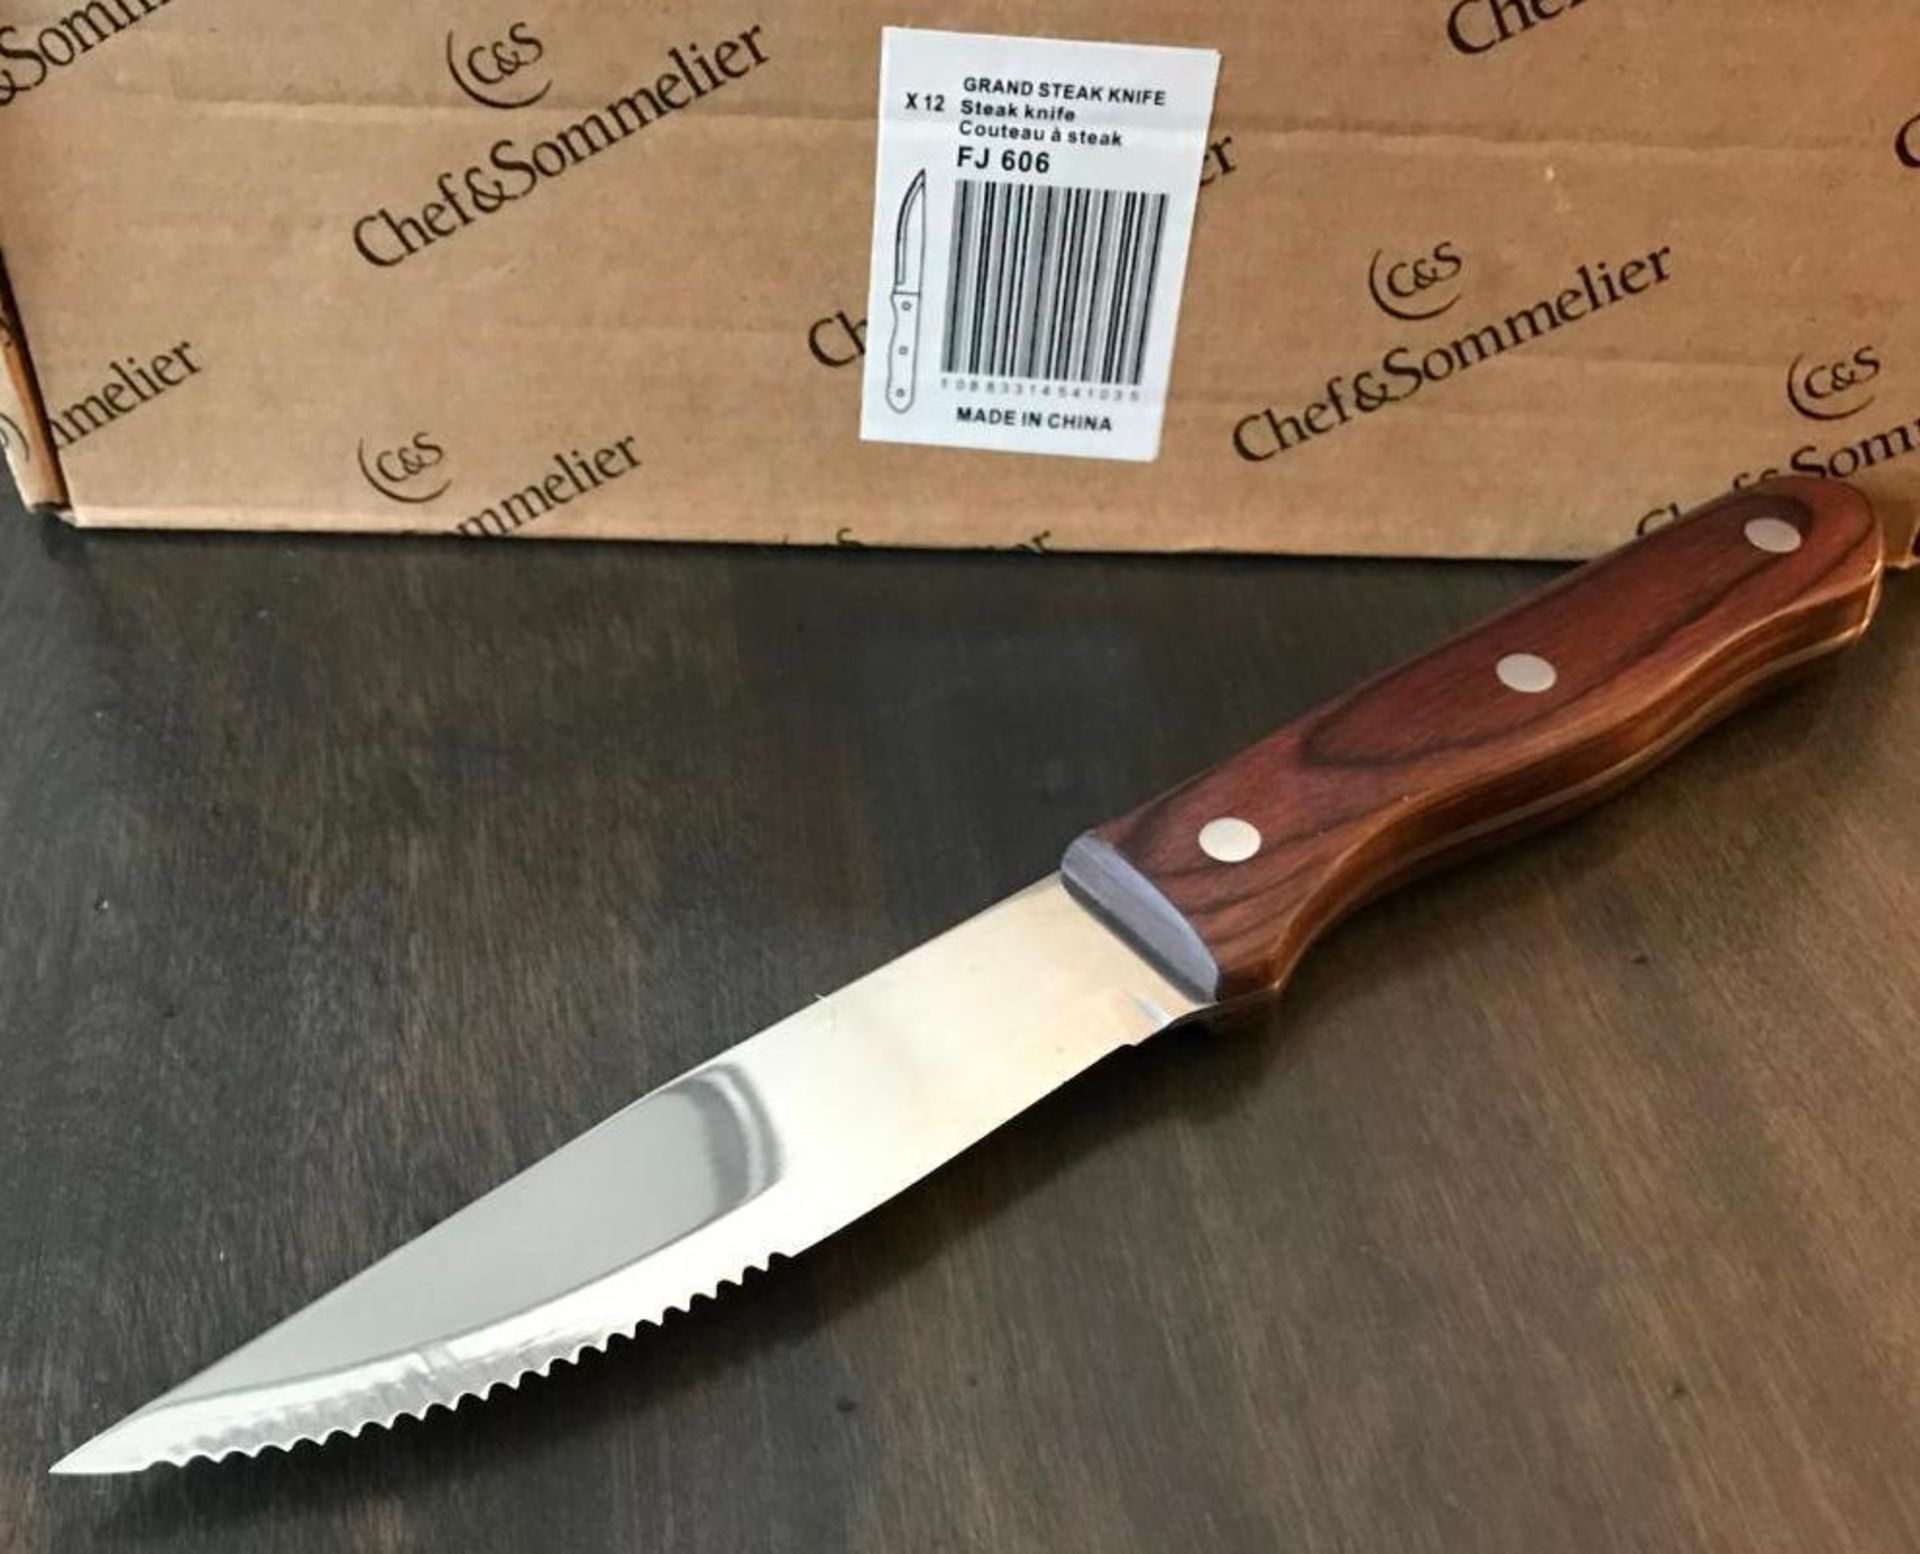 CHEF & SOMMELIER FJ606 GRAND 9" STEAK KNIFE - 12/CASE - NEW